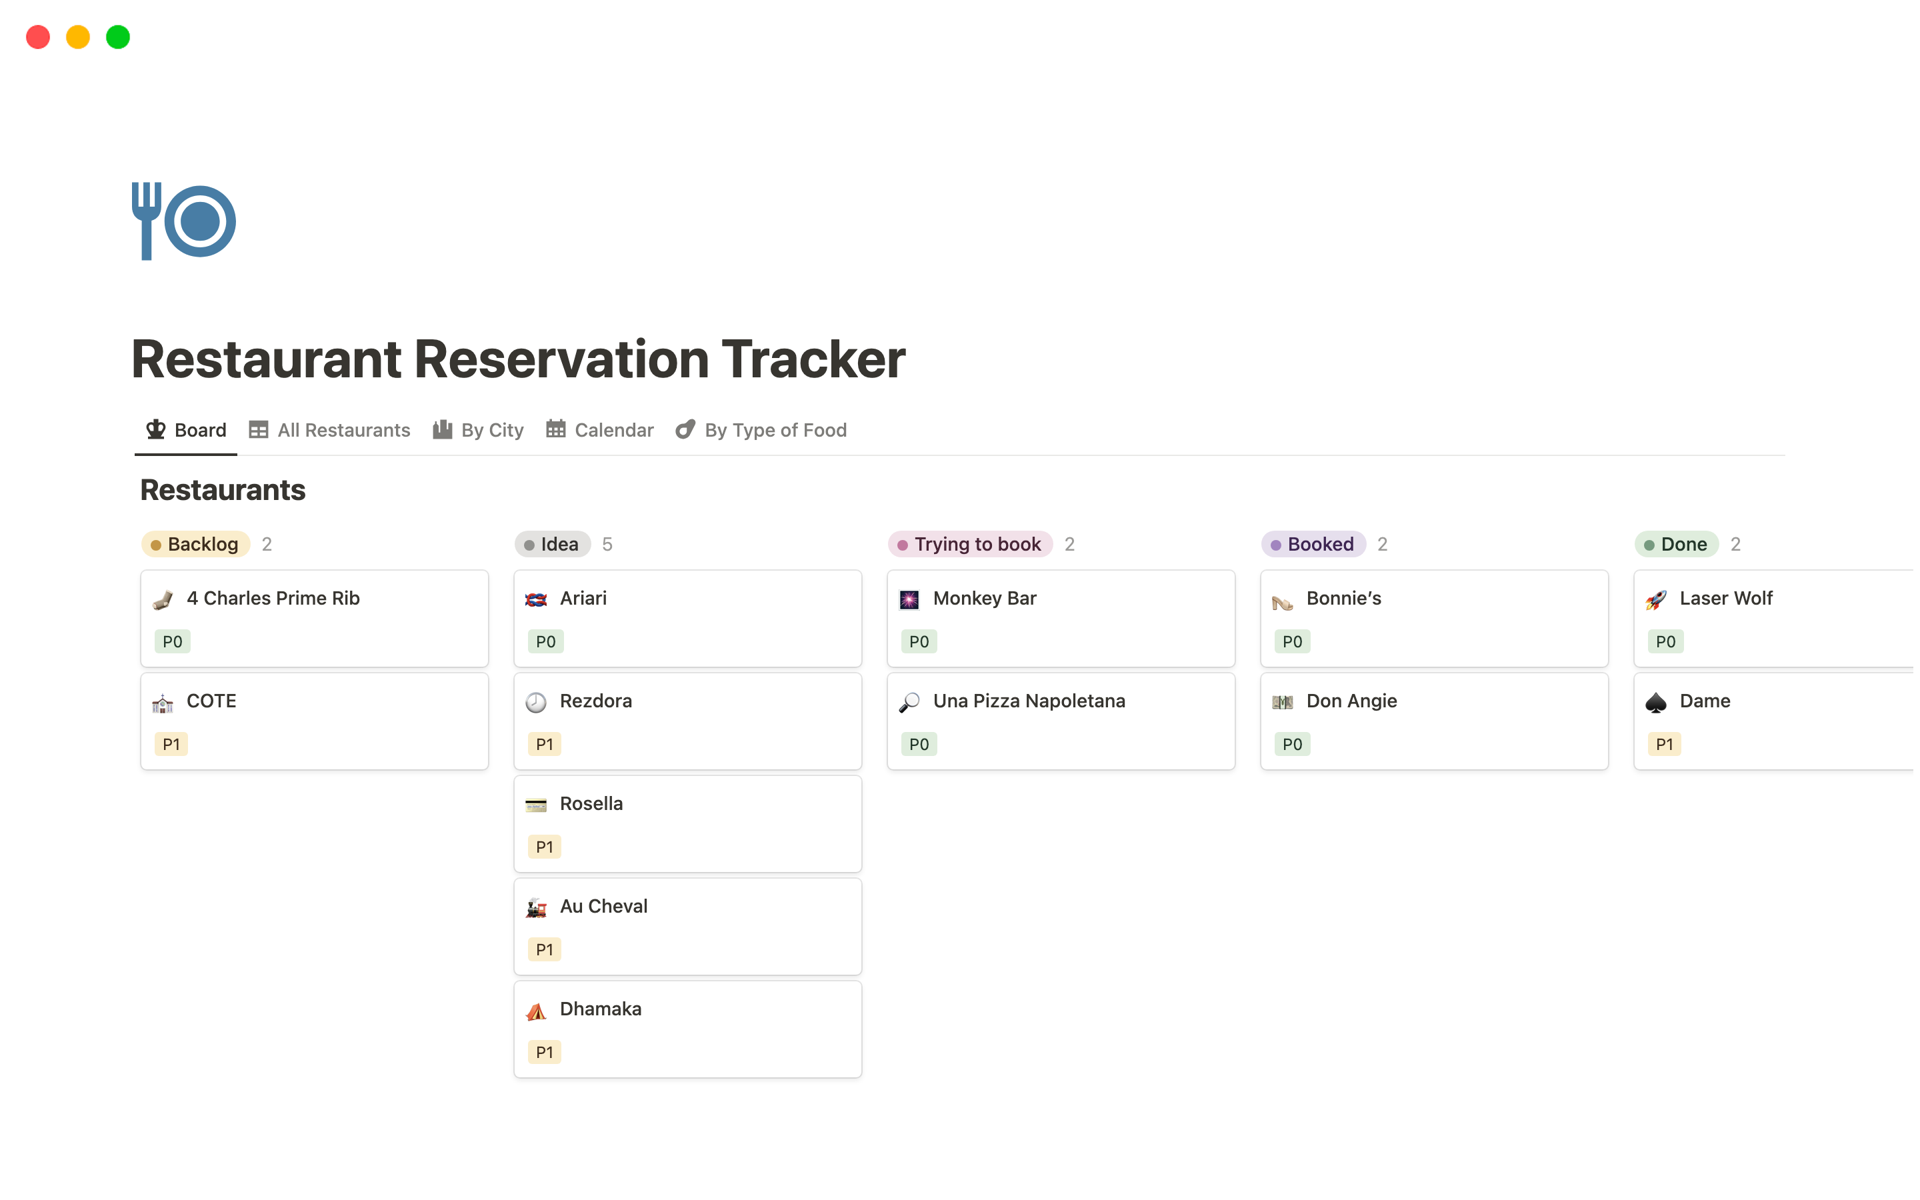 Uma prévia do modelo para Restaurant Reservation Tracker